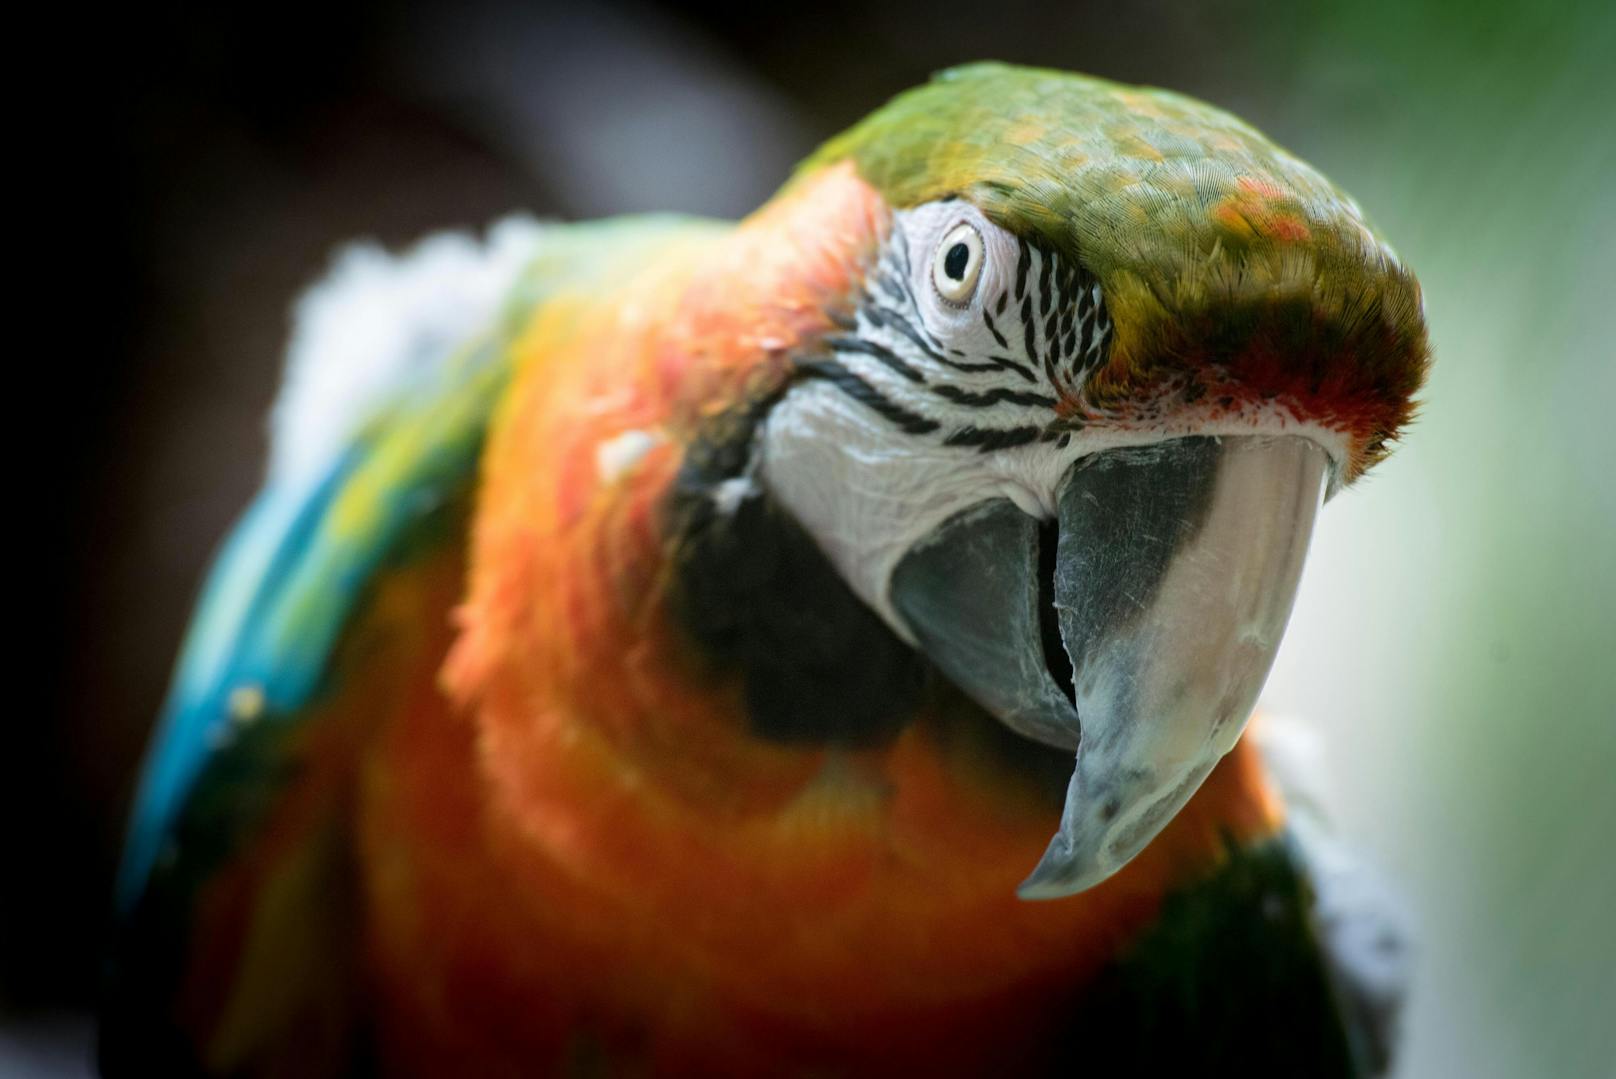 Ein Papagei rettete seinem schlafendem Besitzer das Leben. Dass die Vögel zu Lebensrettern werden, ist kein Einzelfall. <br>